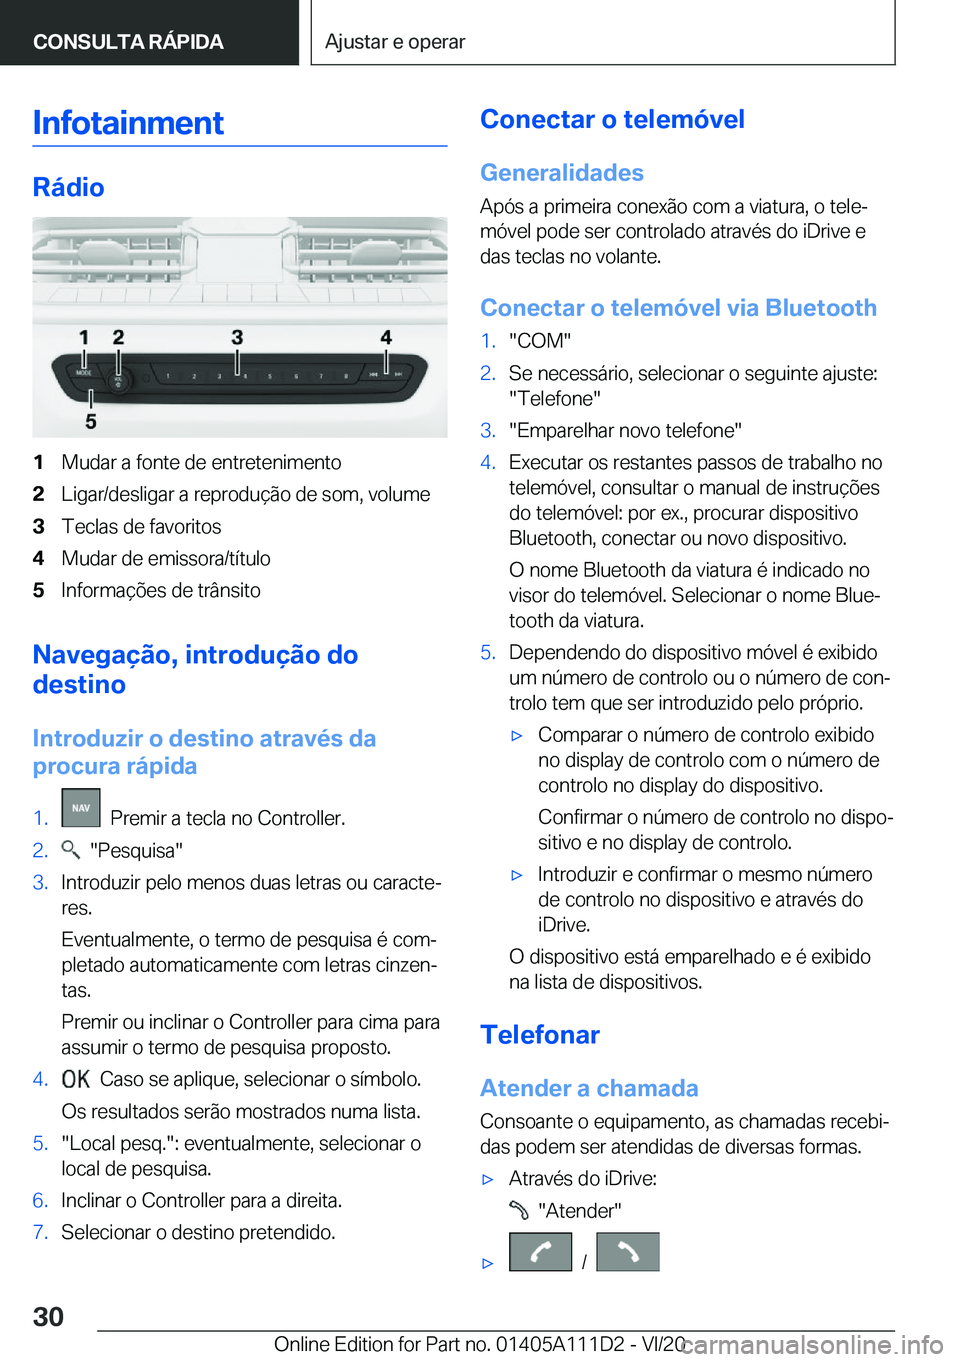 BMW 3 SERIES SEDAN PLUG-IN HYBRID 2021  Manual do condutor (in Portuguese) �I�n�f�o�t�a�i�n�m�e�n�t
�R�á�d�i�o
�1�M�u�d�a�r��a��f�o�n�t�e��d�e��e�n�t�r�e�t�e�n�i�m�e�n�t�o�2�L�i�g�a�r�/�d�e�s�l�i�g�a�r��a��r�e�p�r�o�d�u�